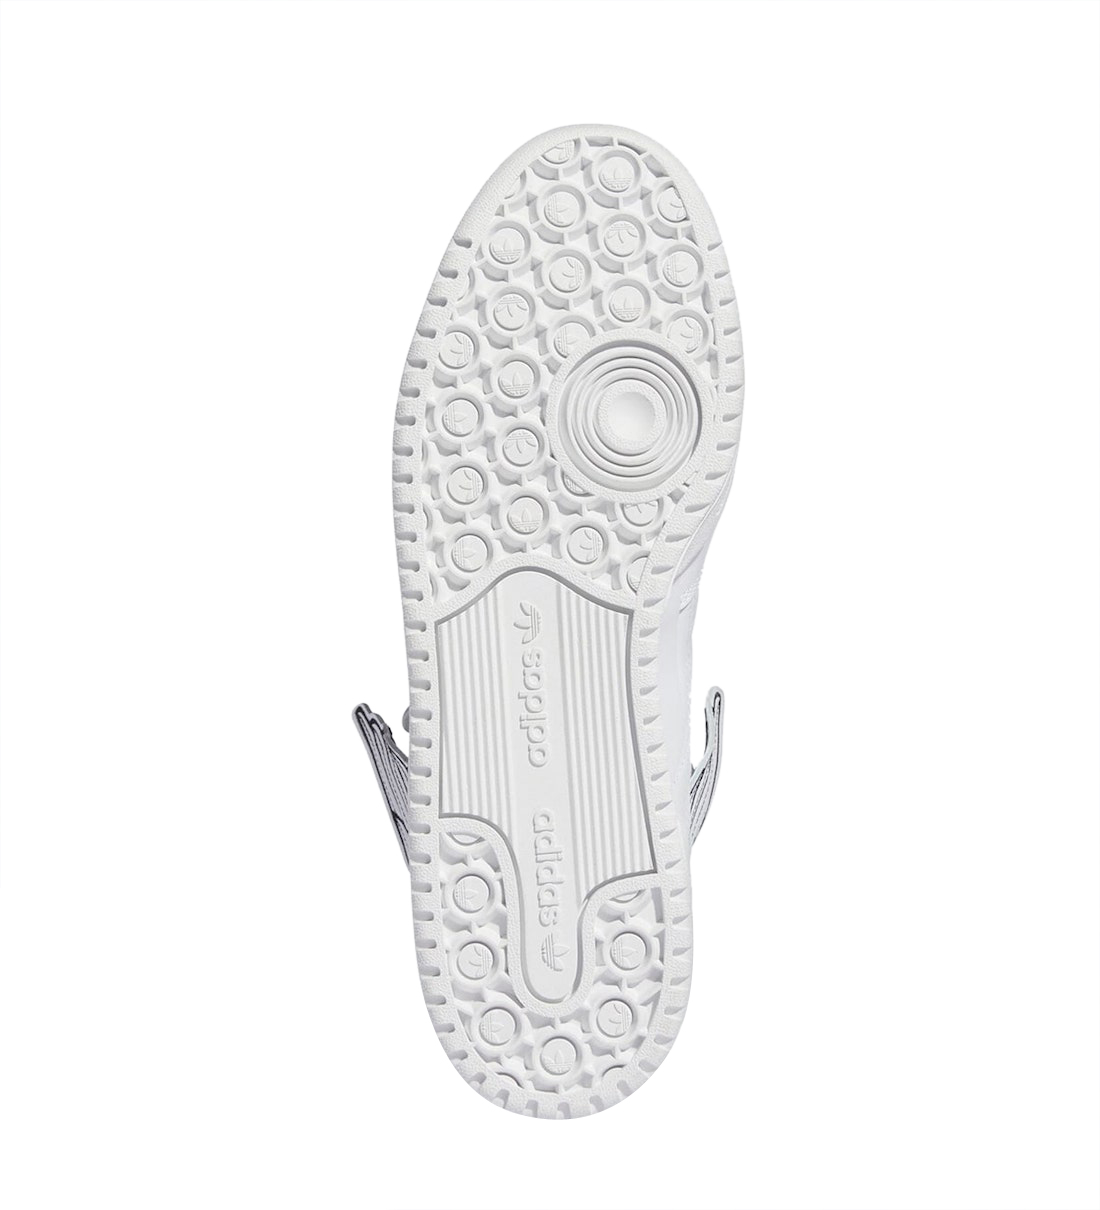 Jeremy Scott x adidas Forum Hi Wings 4.0 Footwear White GX9445